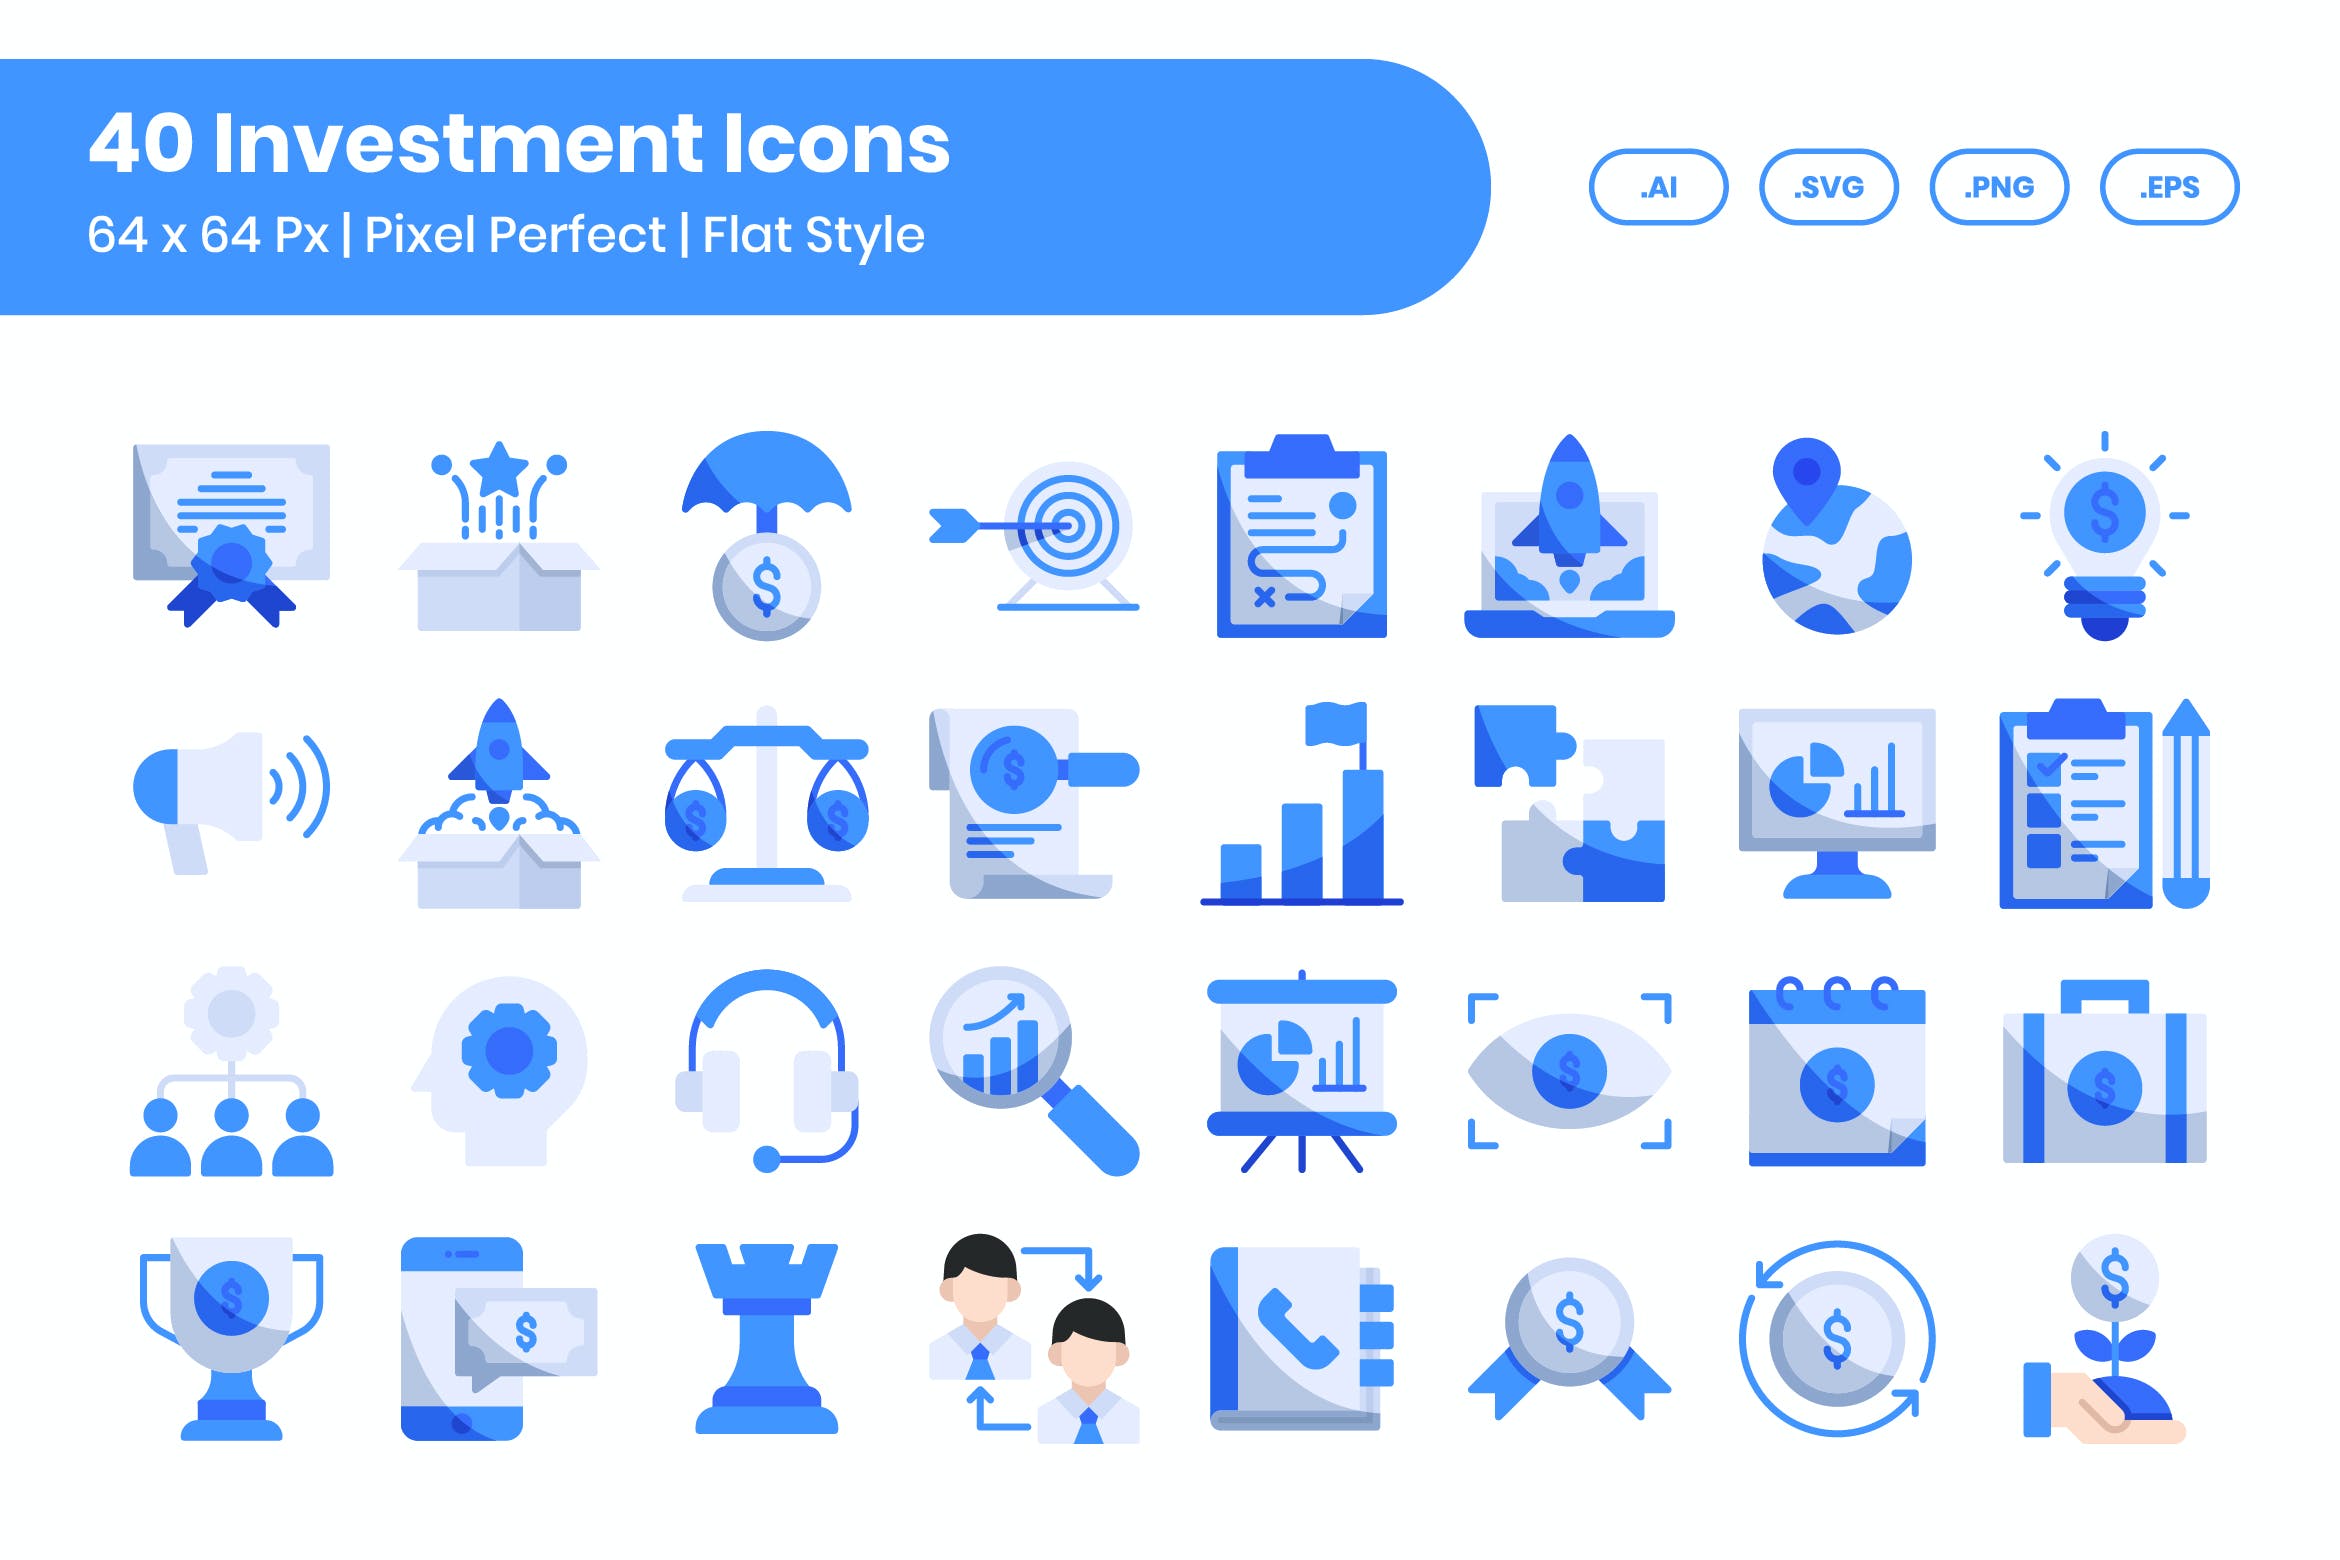 40个投资扁平矢量图标素材集 40 Investment Icons Set – Flat